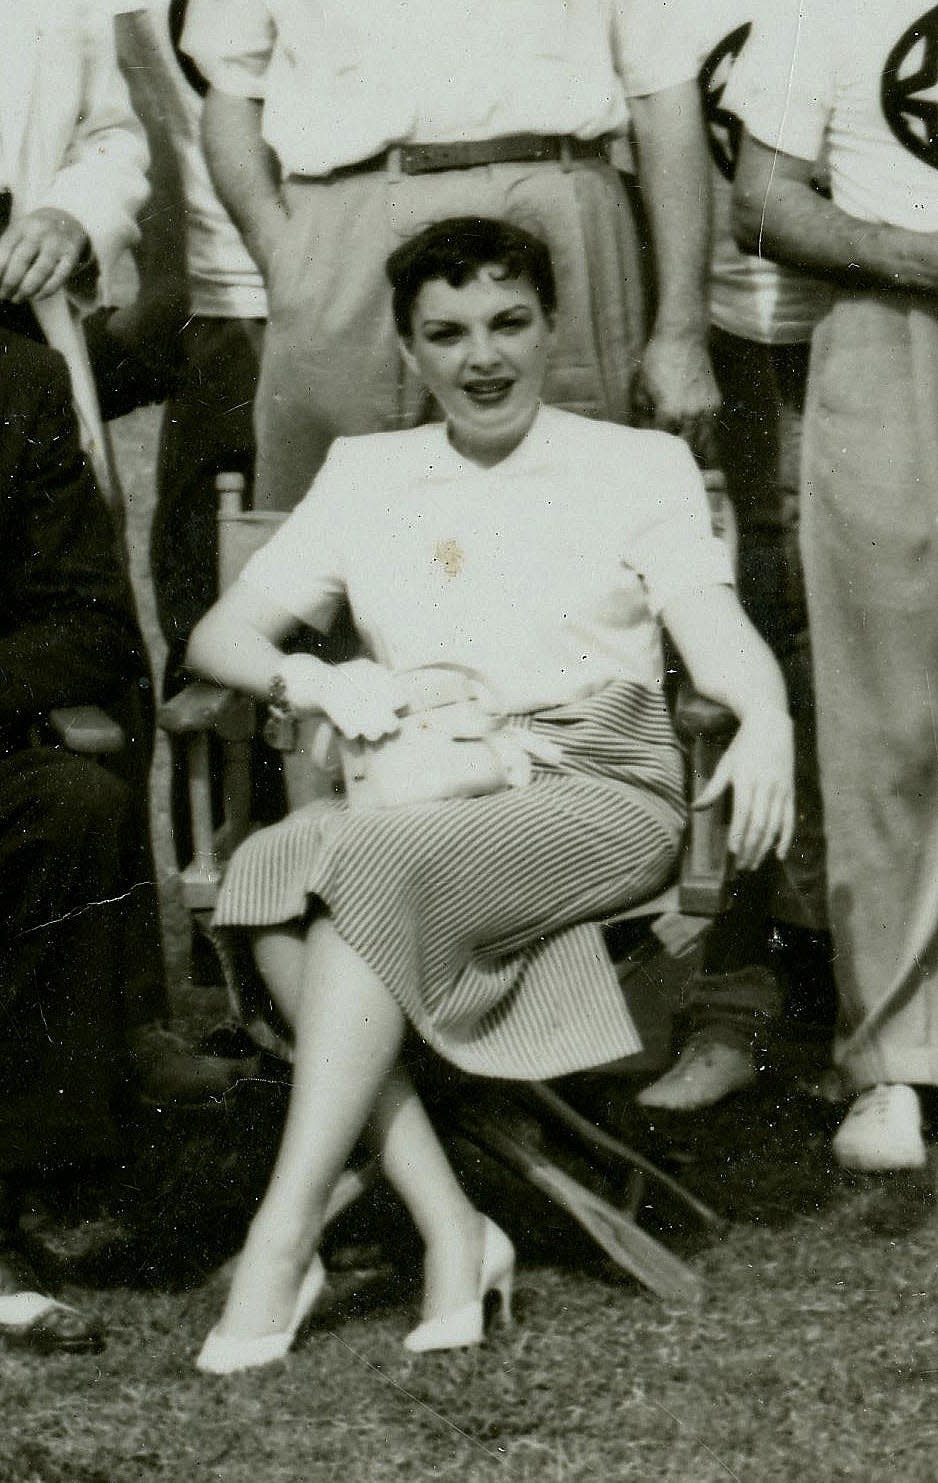 Judy Garland, inset of 1952 society baseball teams' photo.